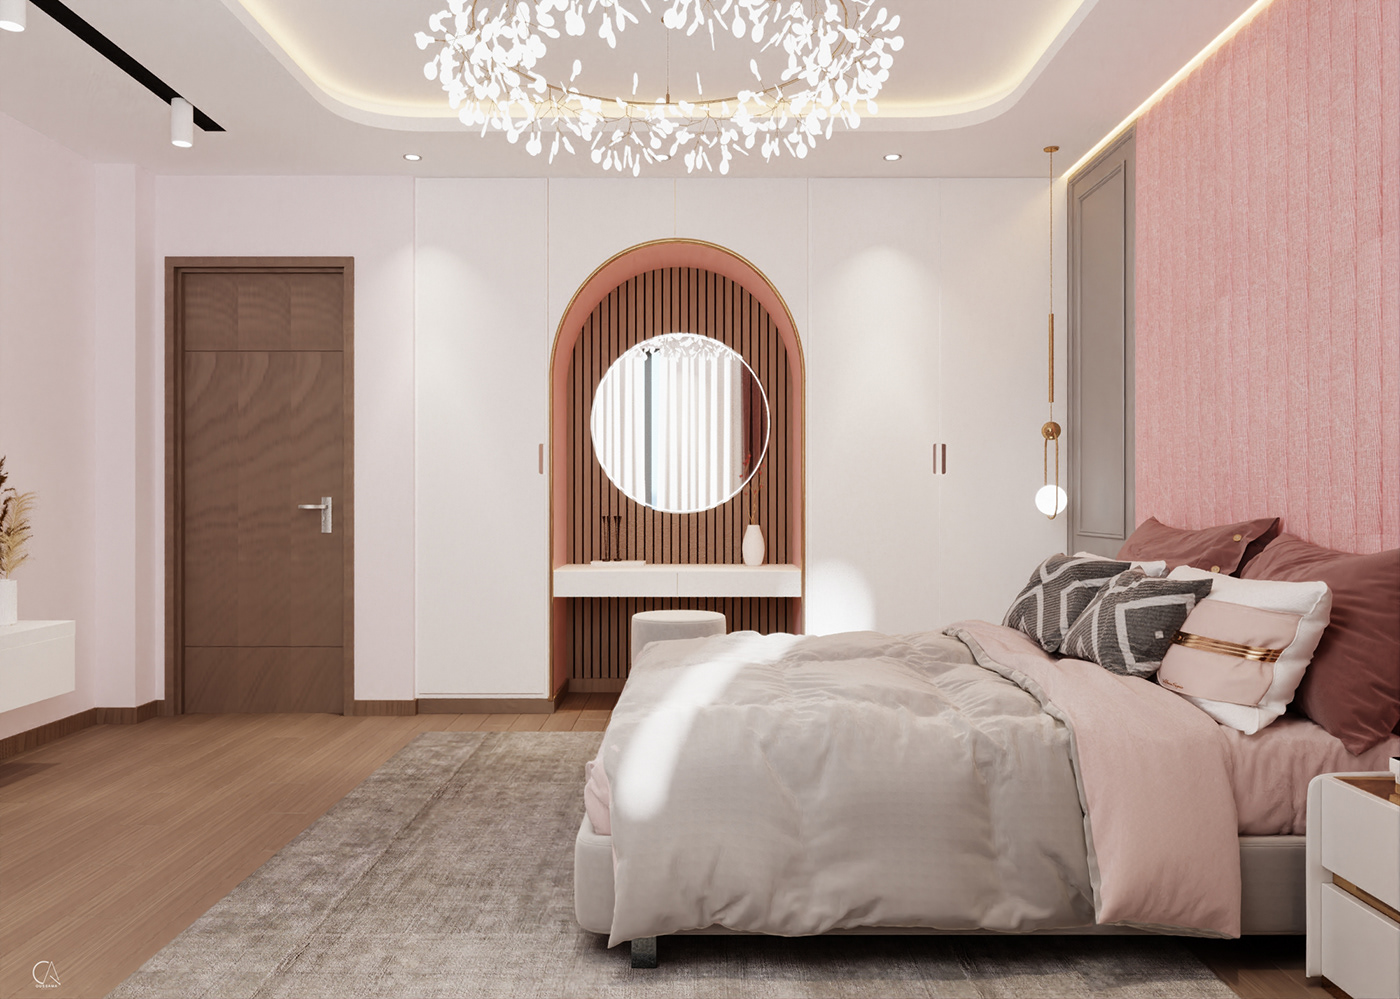 girls bedroom  chambre fille interior design  Architecte d'intérieur architecte 3ds max vray 3D Rendering Services 3D Interior design d'intérieur